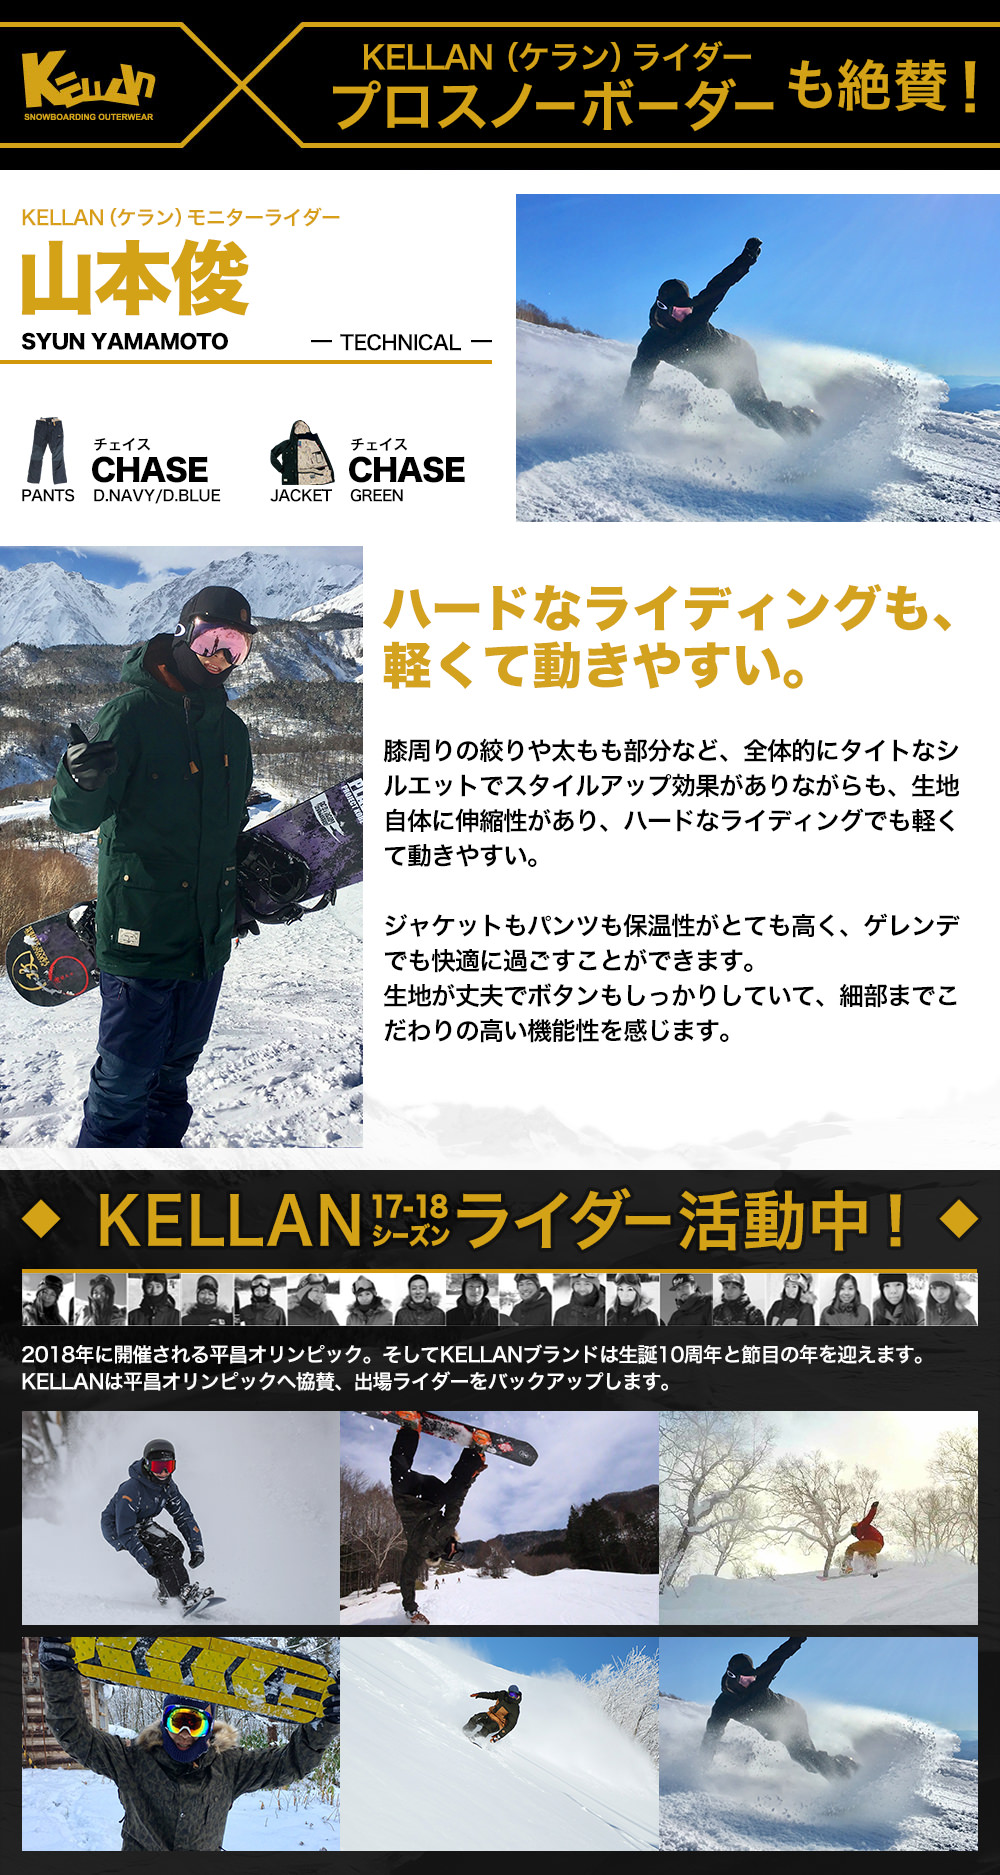 ベストスポーツ スノボ ウェア メンズ ケラン チェイスパンツ スノーボードウェア スキーウェア 大きいサイズ 耐水圧 KELLAN CHASE PNT 10202 送料無料